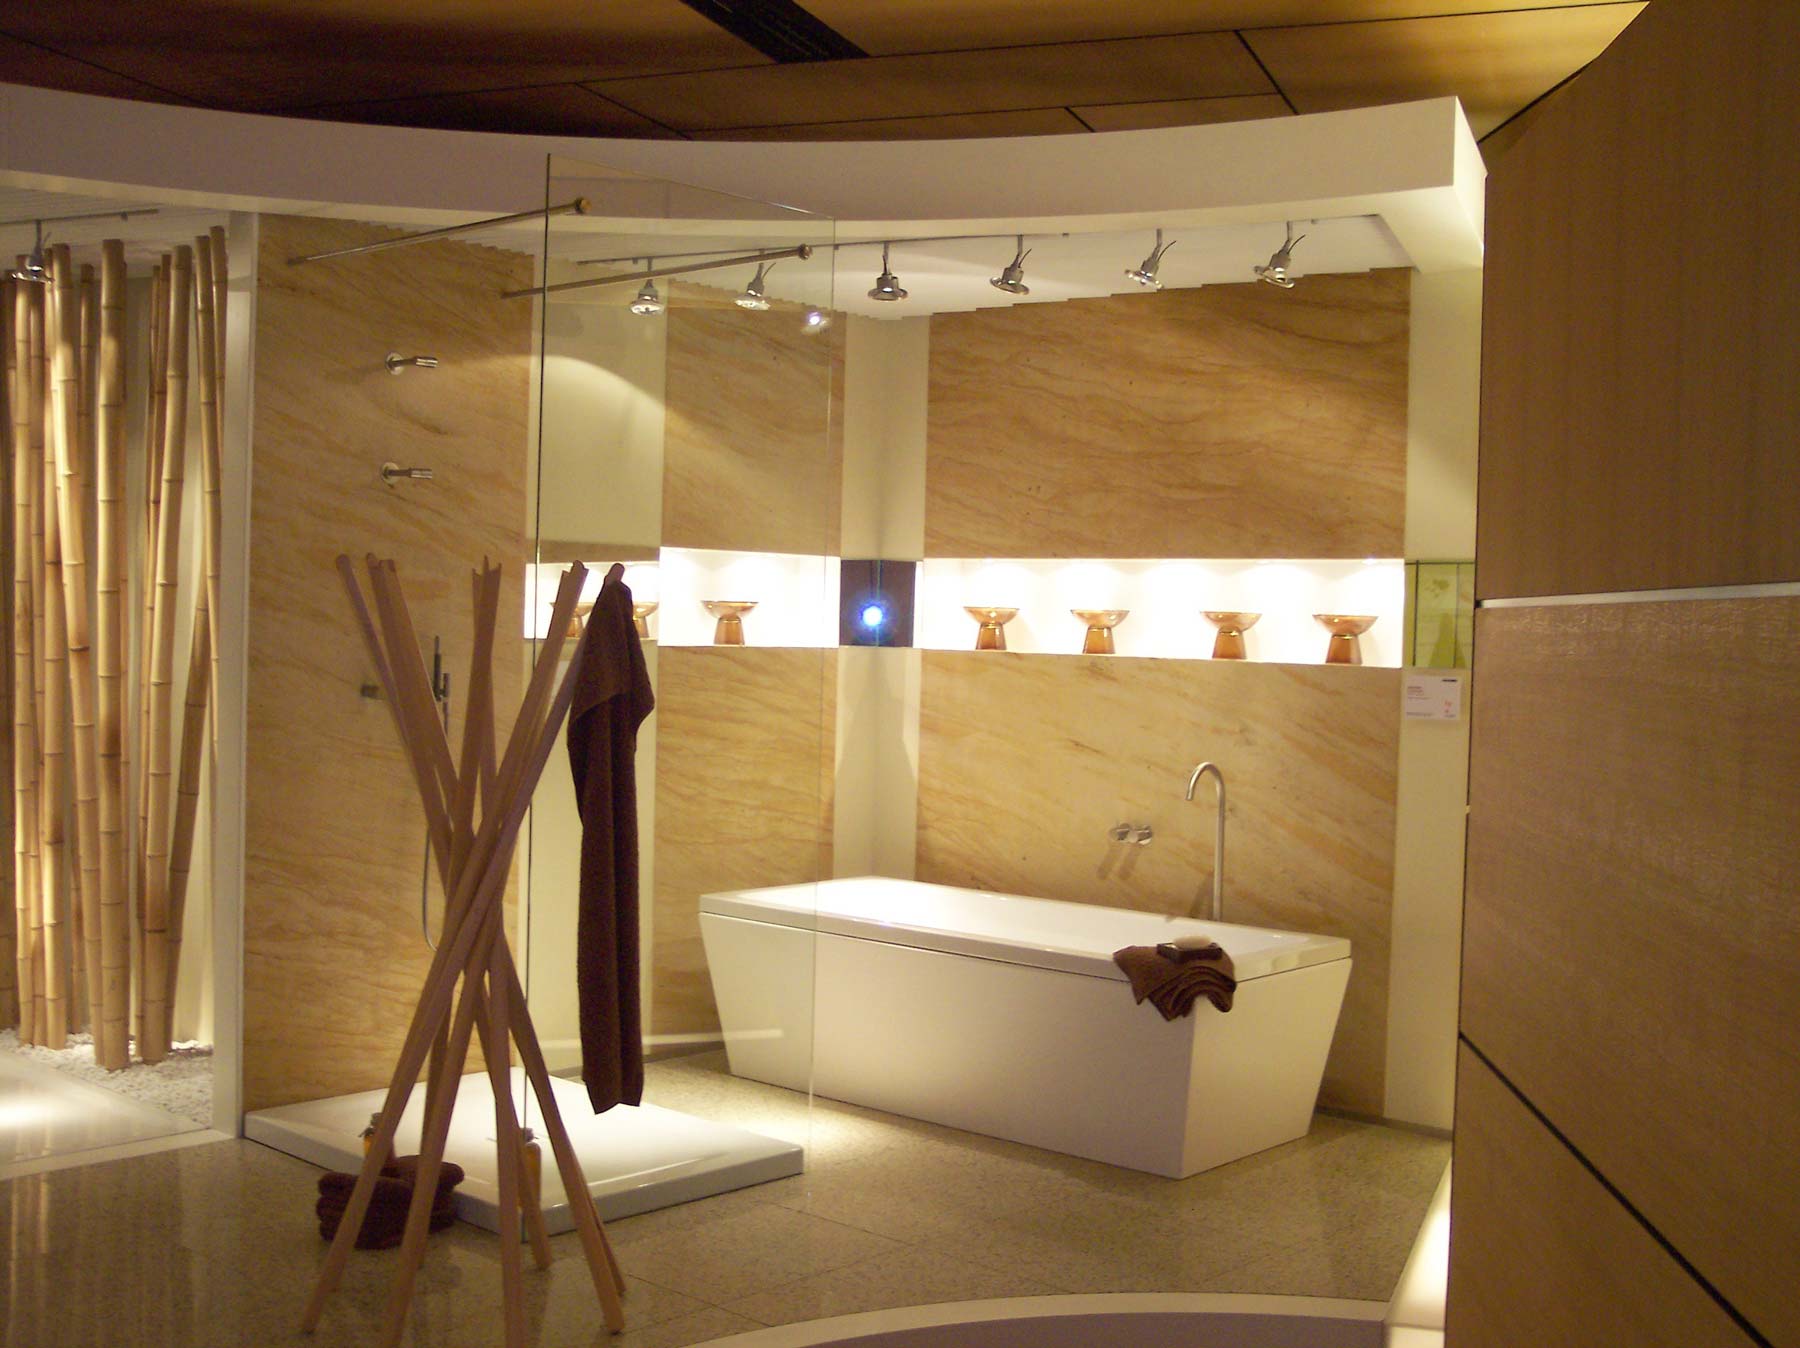 Tapeten auf Glasfaserbasis in original Sandstein, ob für das Bad (versiegelt) oder das Wohnzimmer (unten)